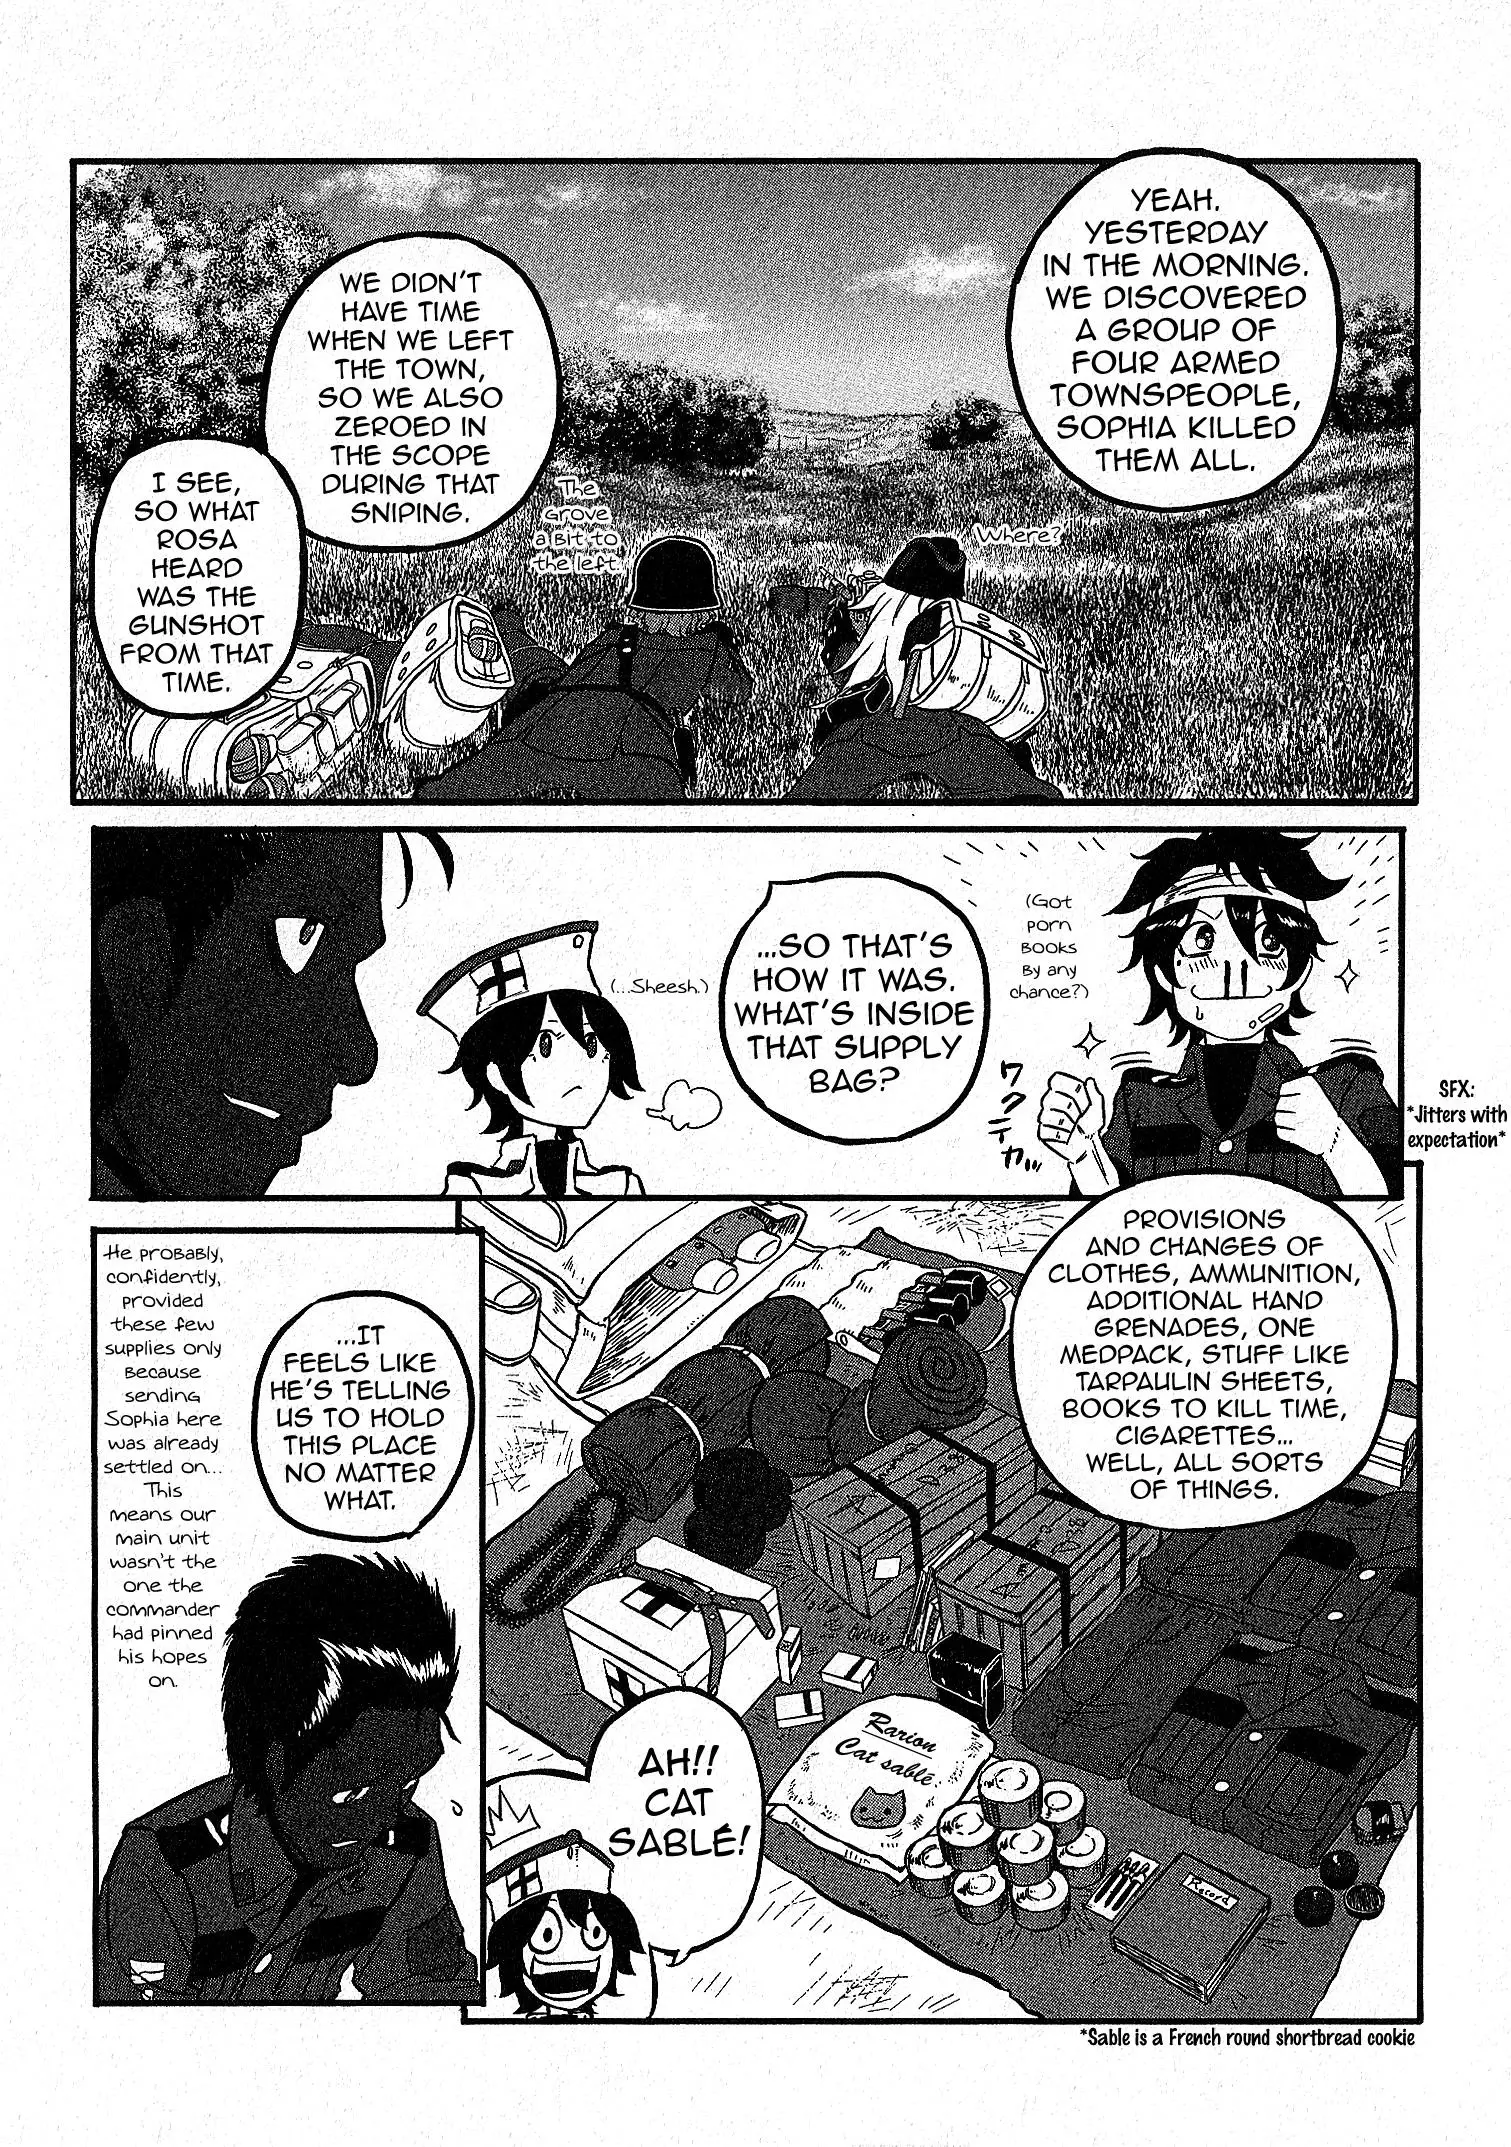 Groundless - Sekigan No Sogekihei - 13 page 10-48b4c876